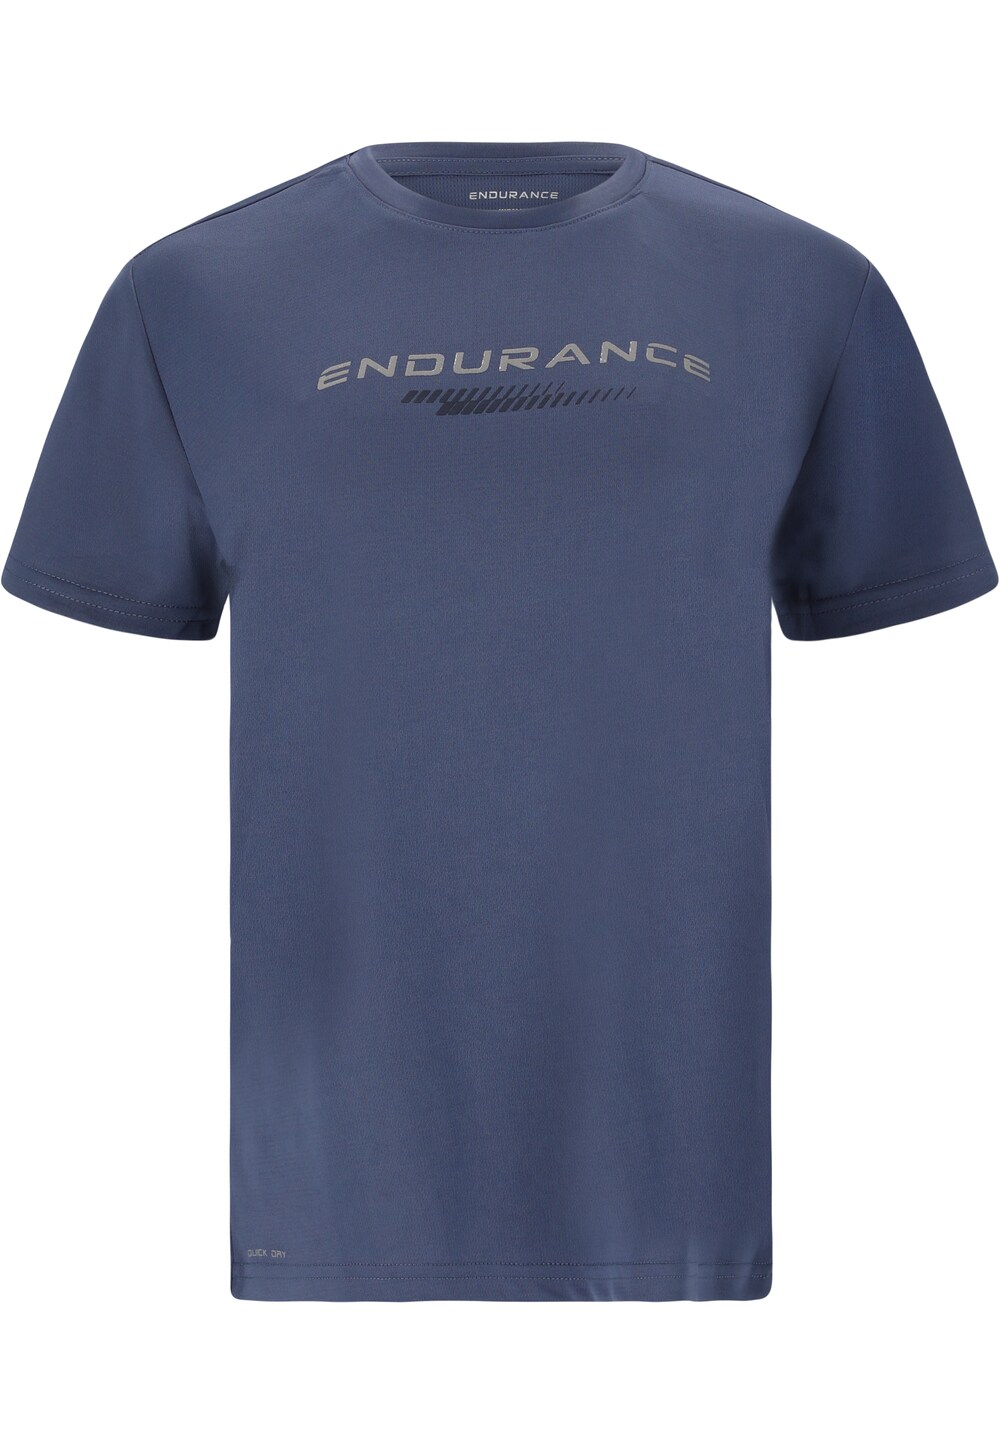 Рубашка для выступлений Endurance Keiling, синий рубашка для выступлений endurance keskon синий